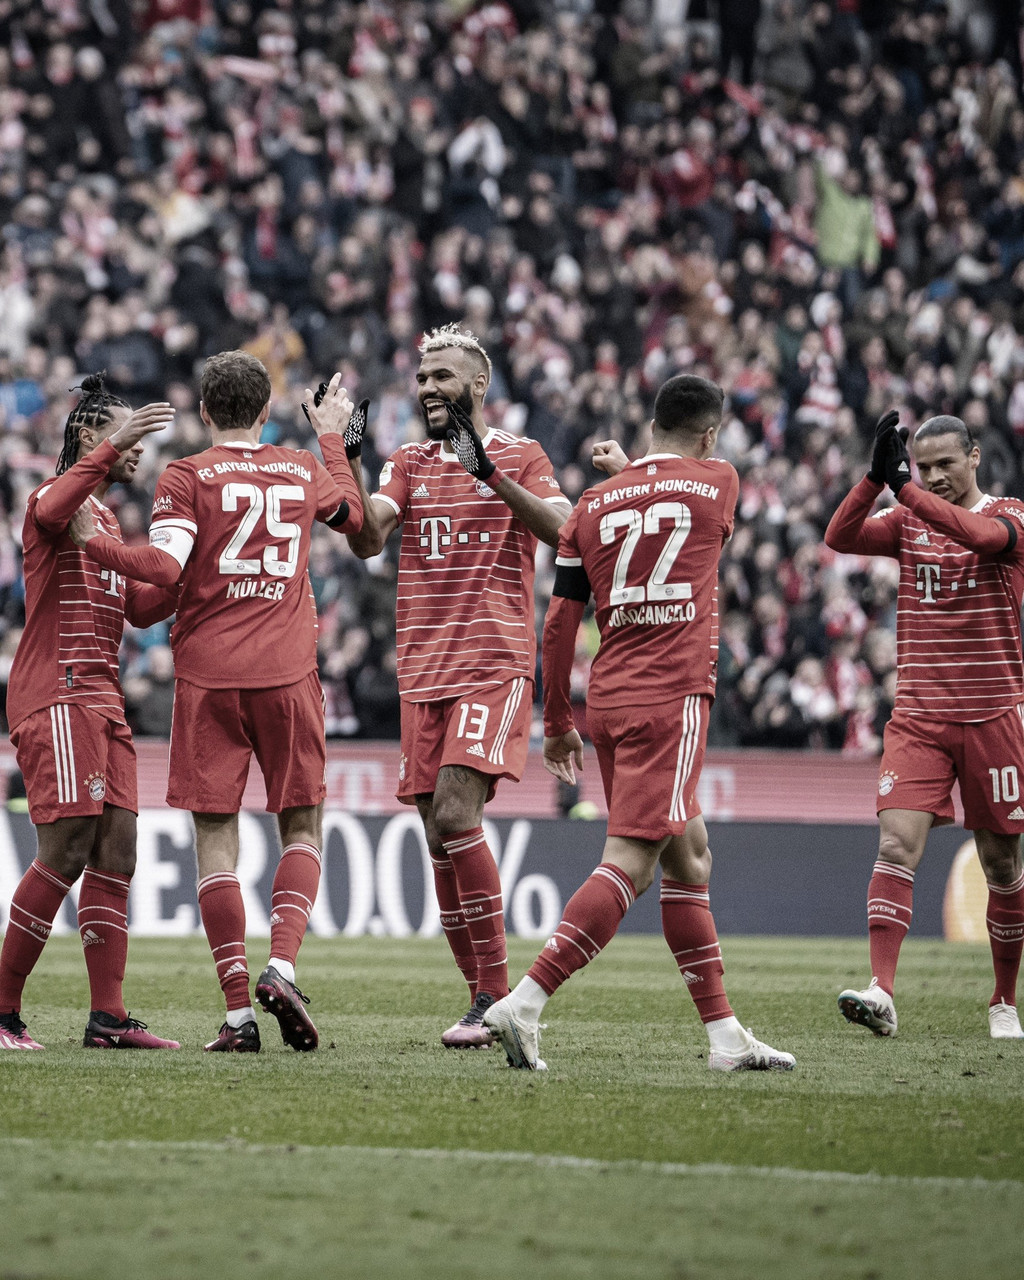 Crónica general jornada 20 de la Bundesliga